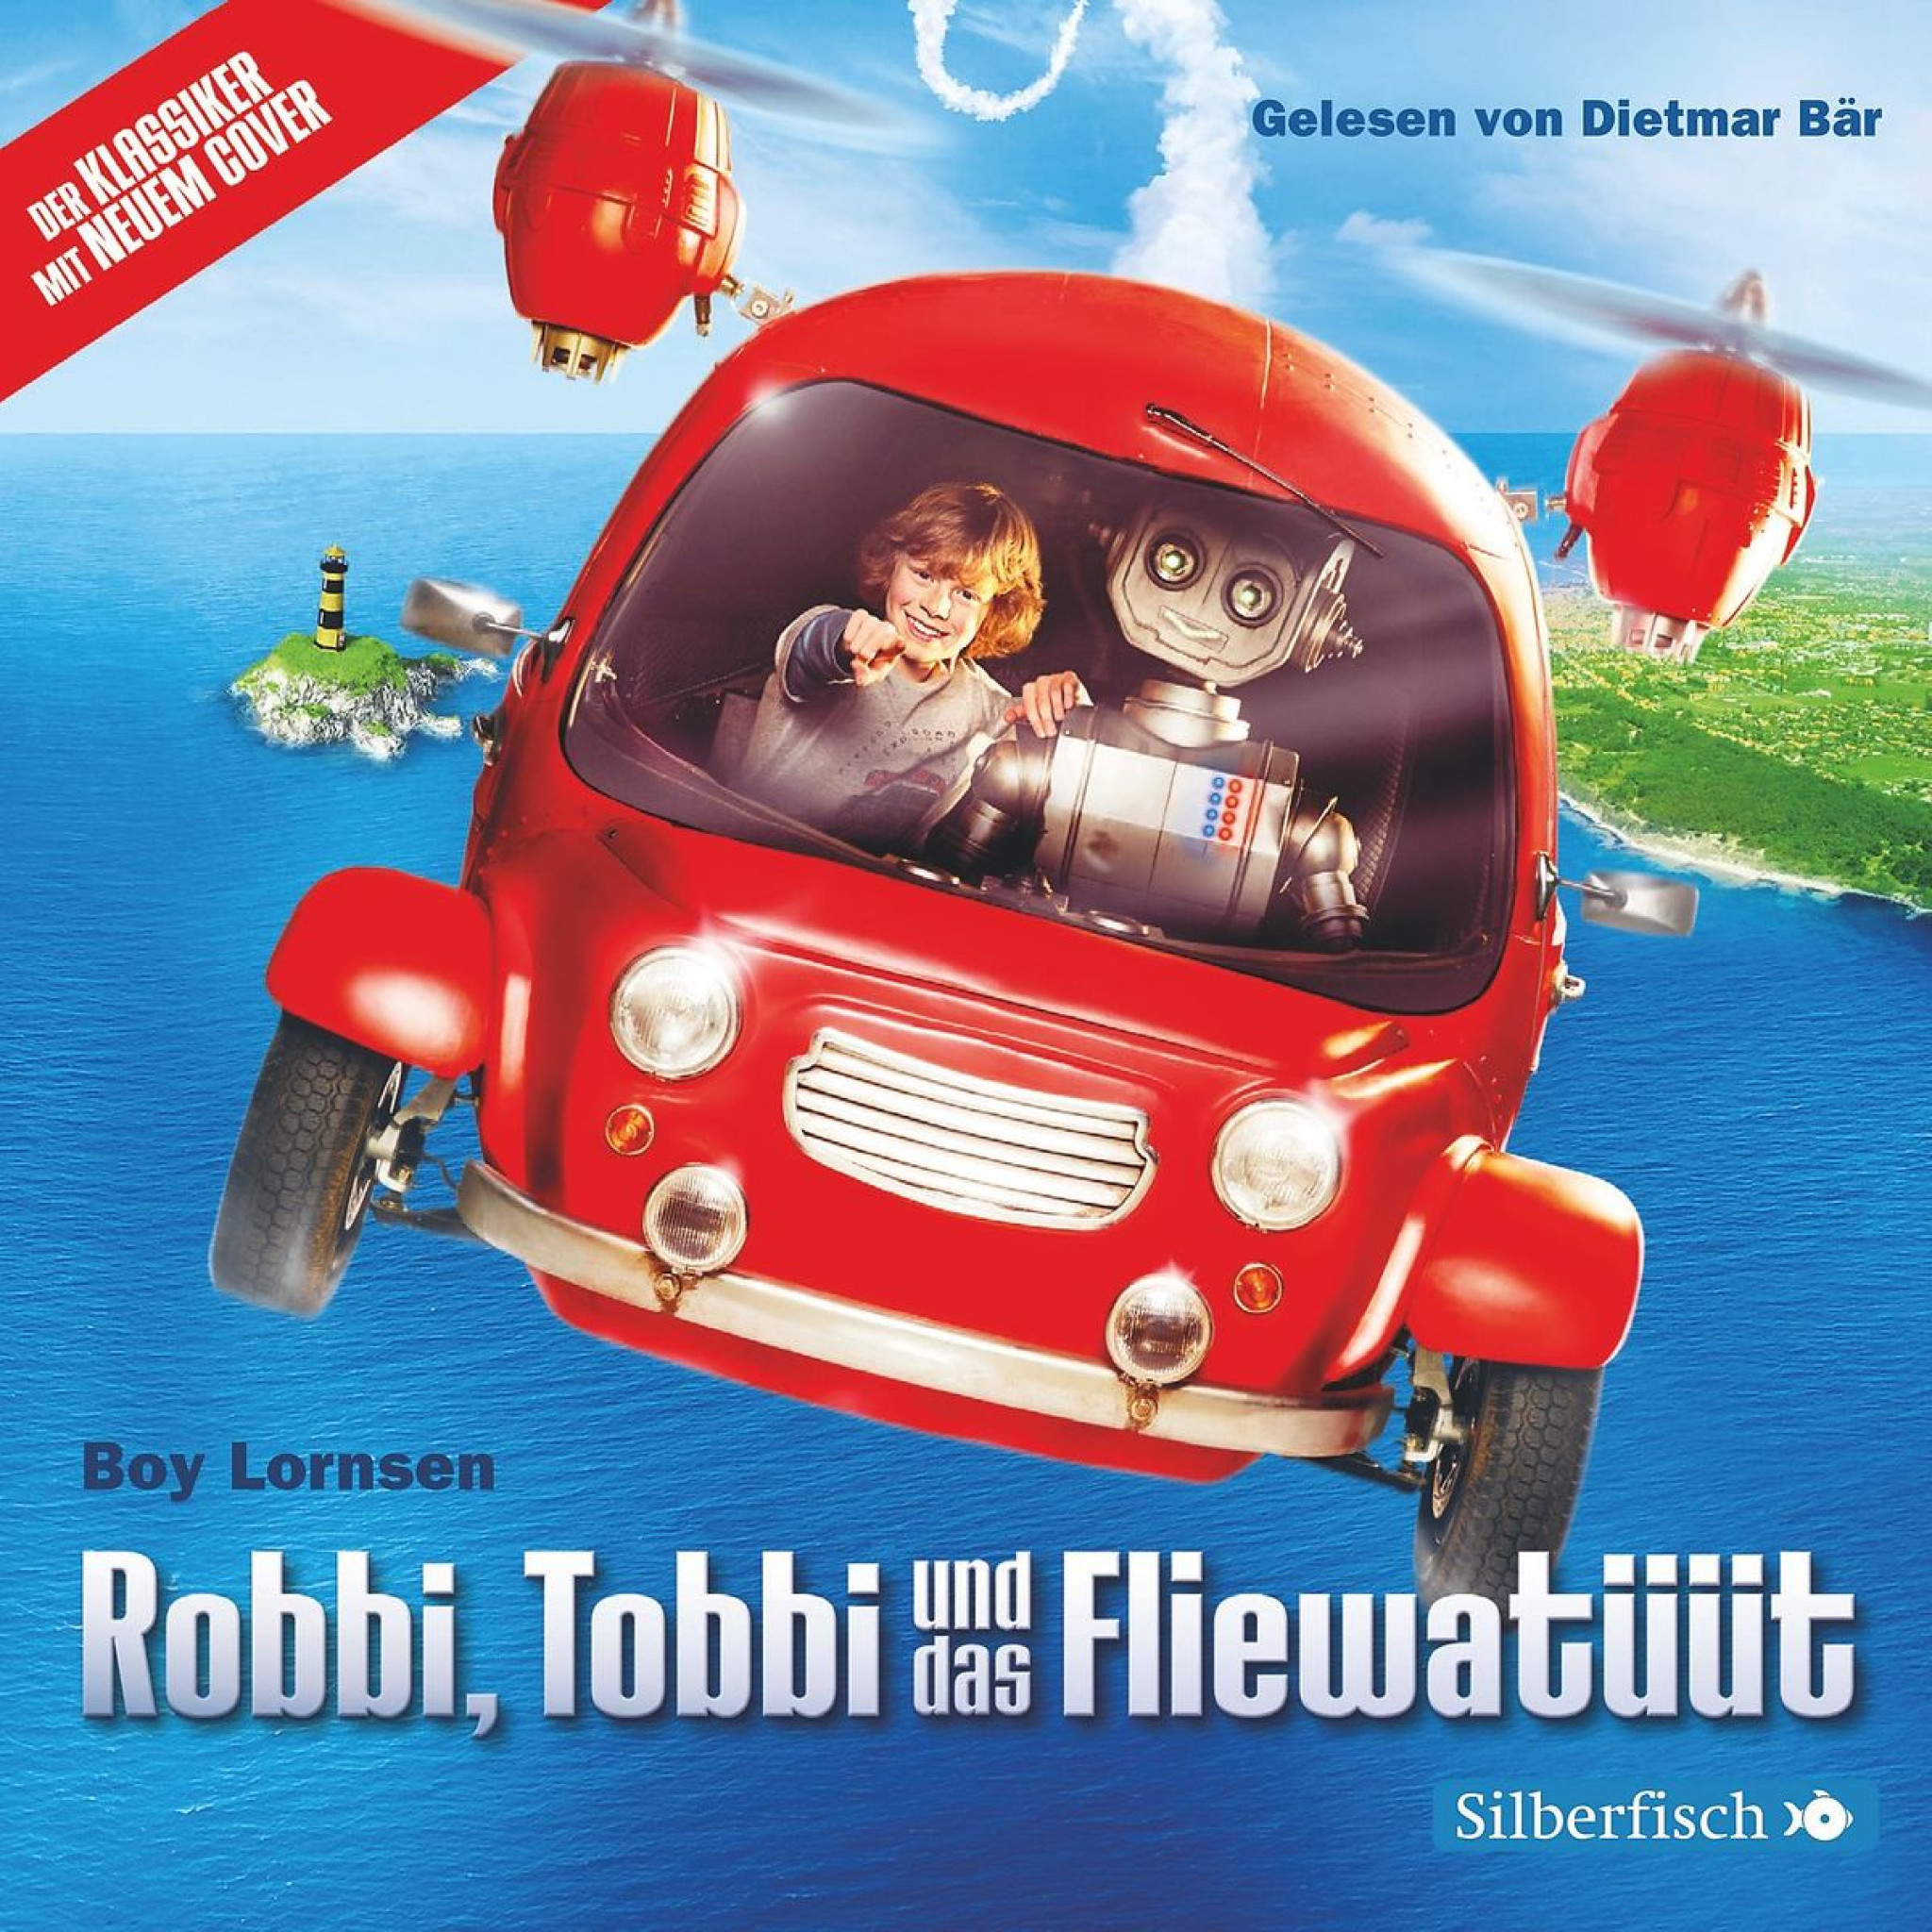 B. Lornsen: Robbi, Tobbi und das Fliewatüüt (Film)